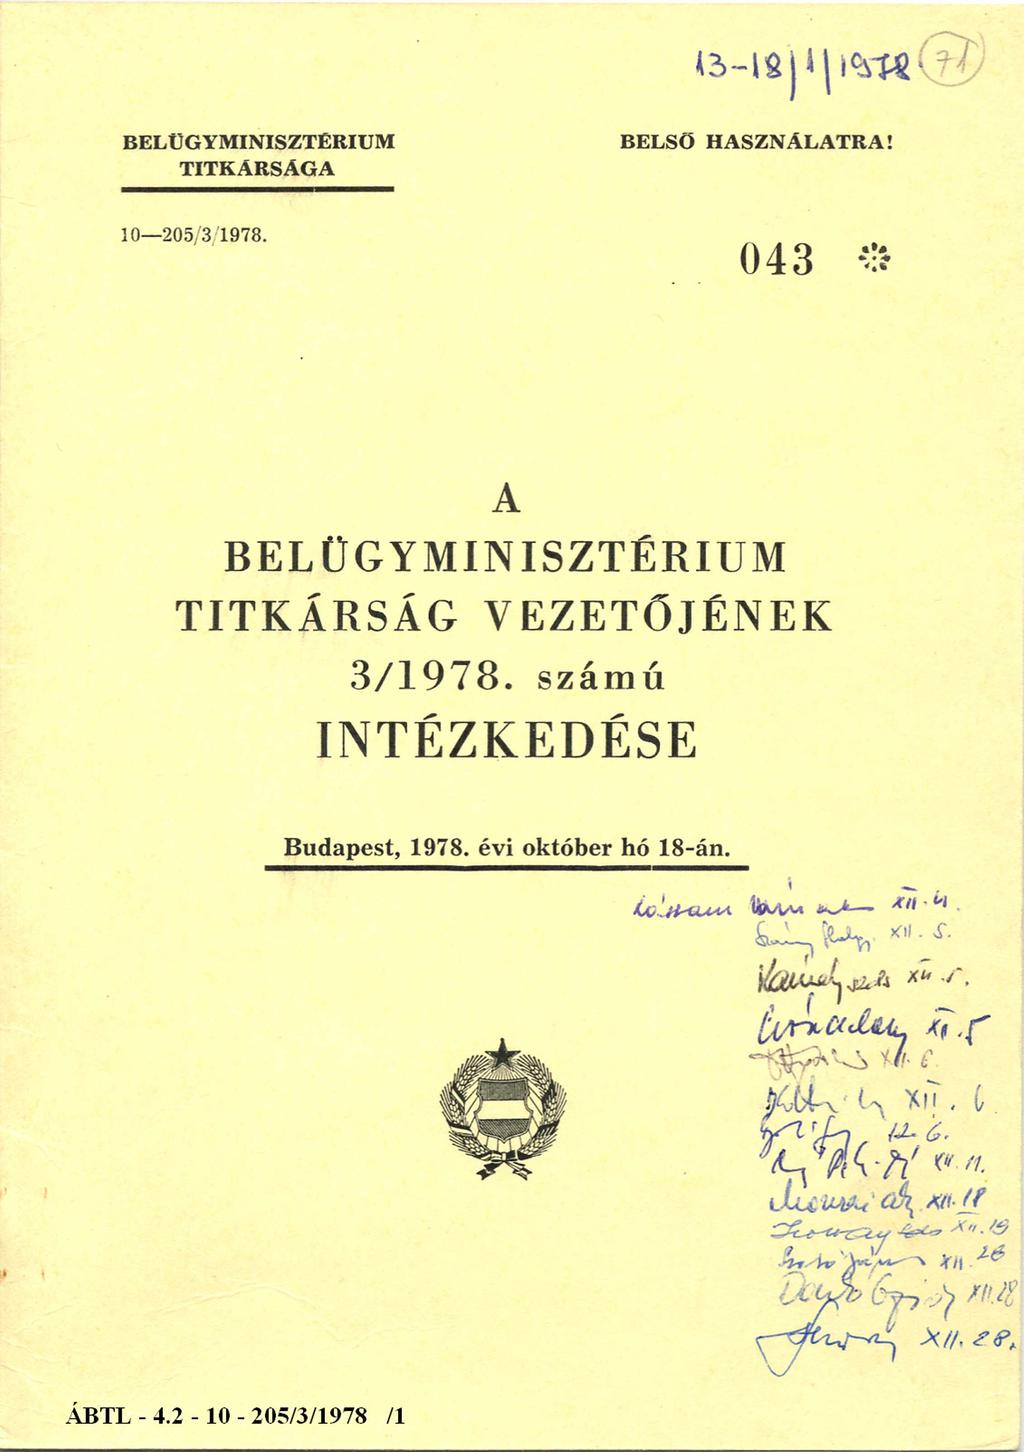 BELÜGYMINISZTÉRIUM TITKÁRSÁGA BELSŐ HASZNÁLATRA! 10 205/3/1978.